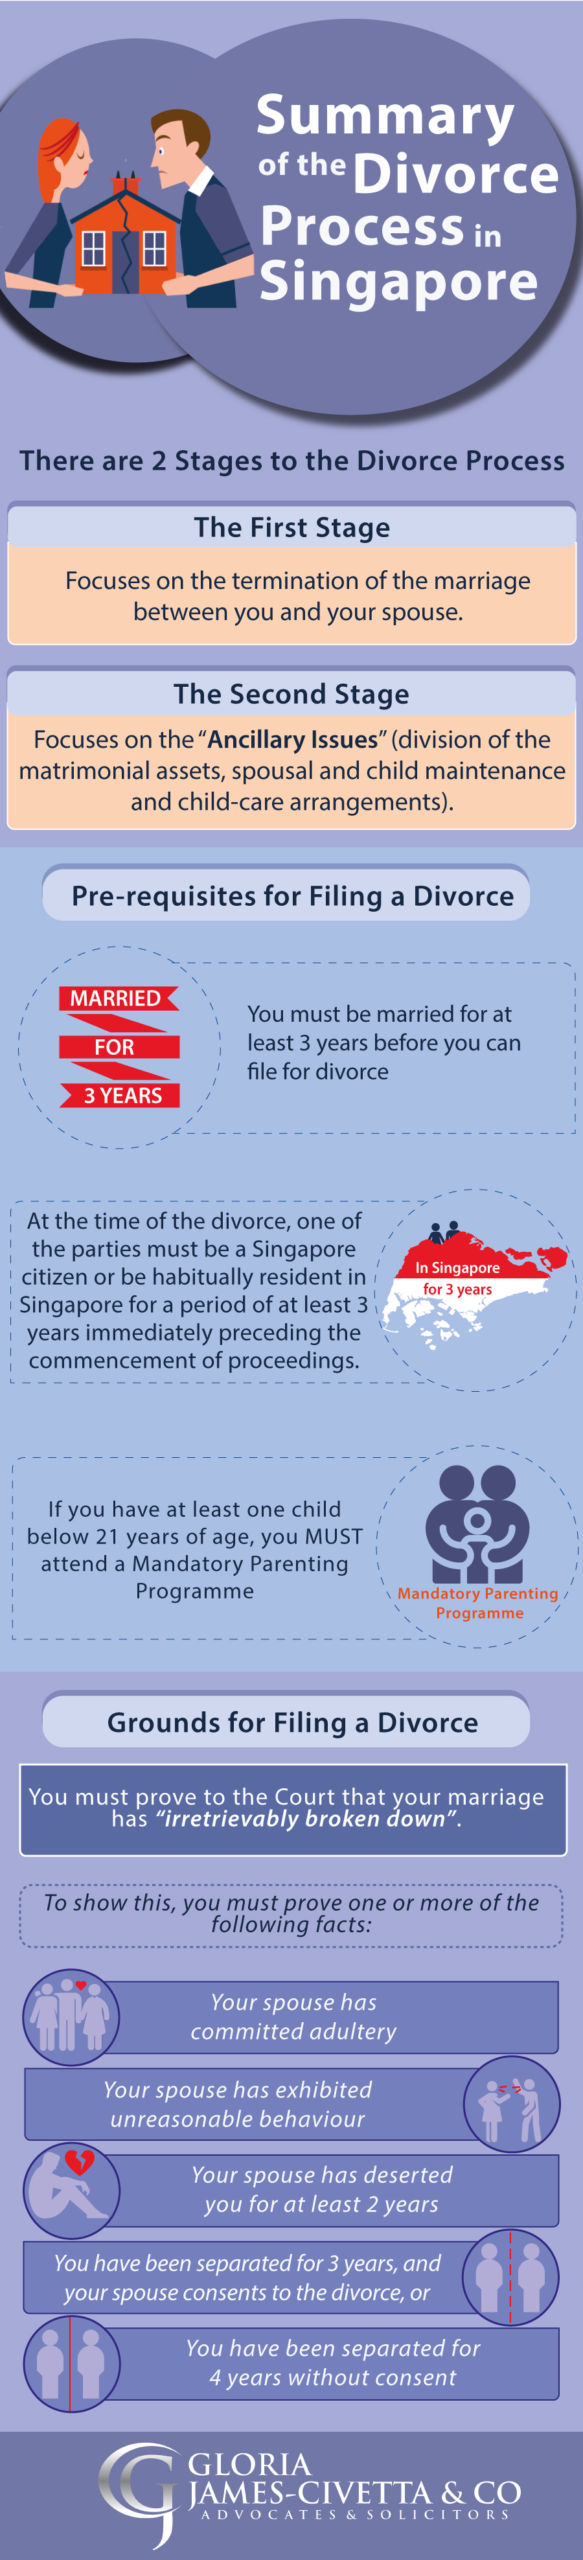 divorce process summary